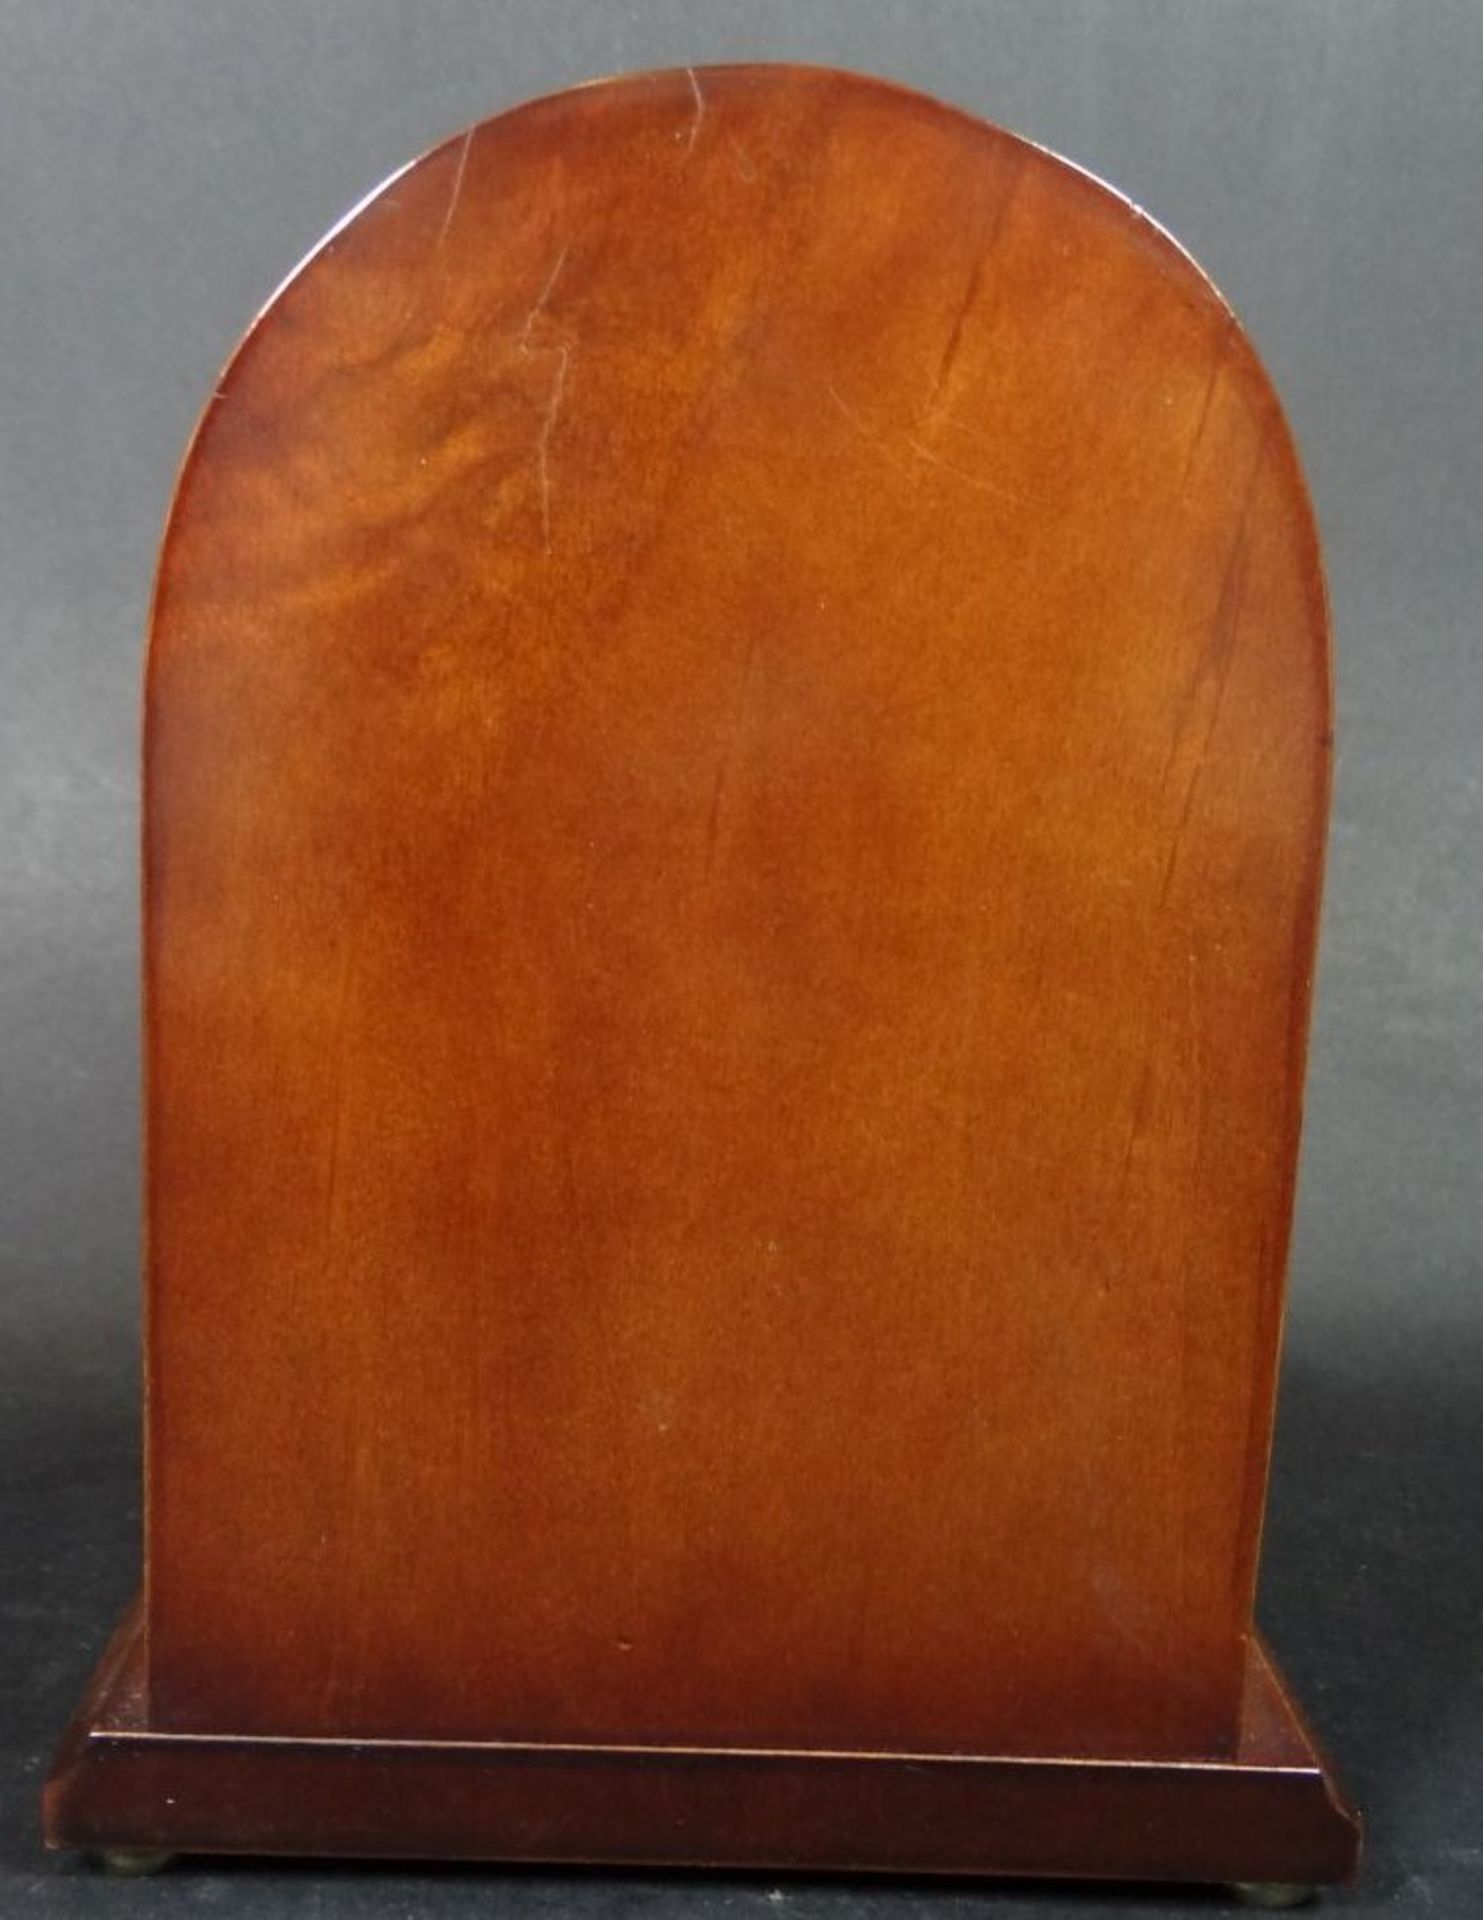 Quartz Tischuhr in Holzgehäuse, H-17 cm, B-12,5 cm, T-5,5 cm, Werk läu- - -22.61 % buyer's premium - Bild 4 aus 5